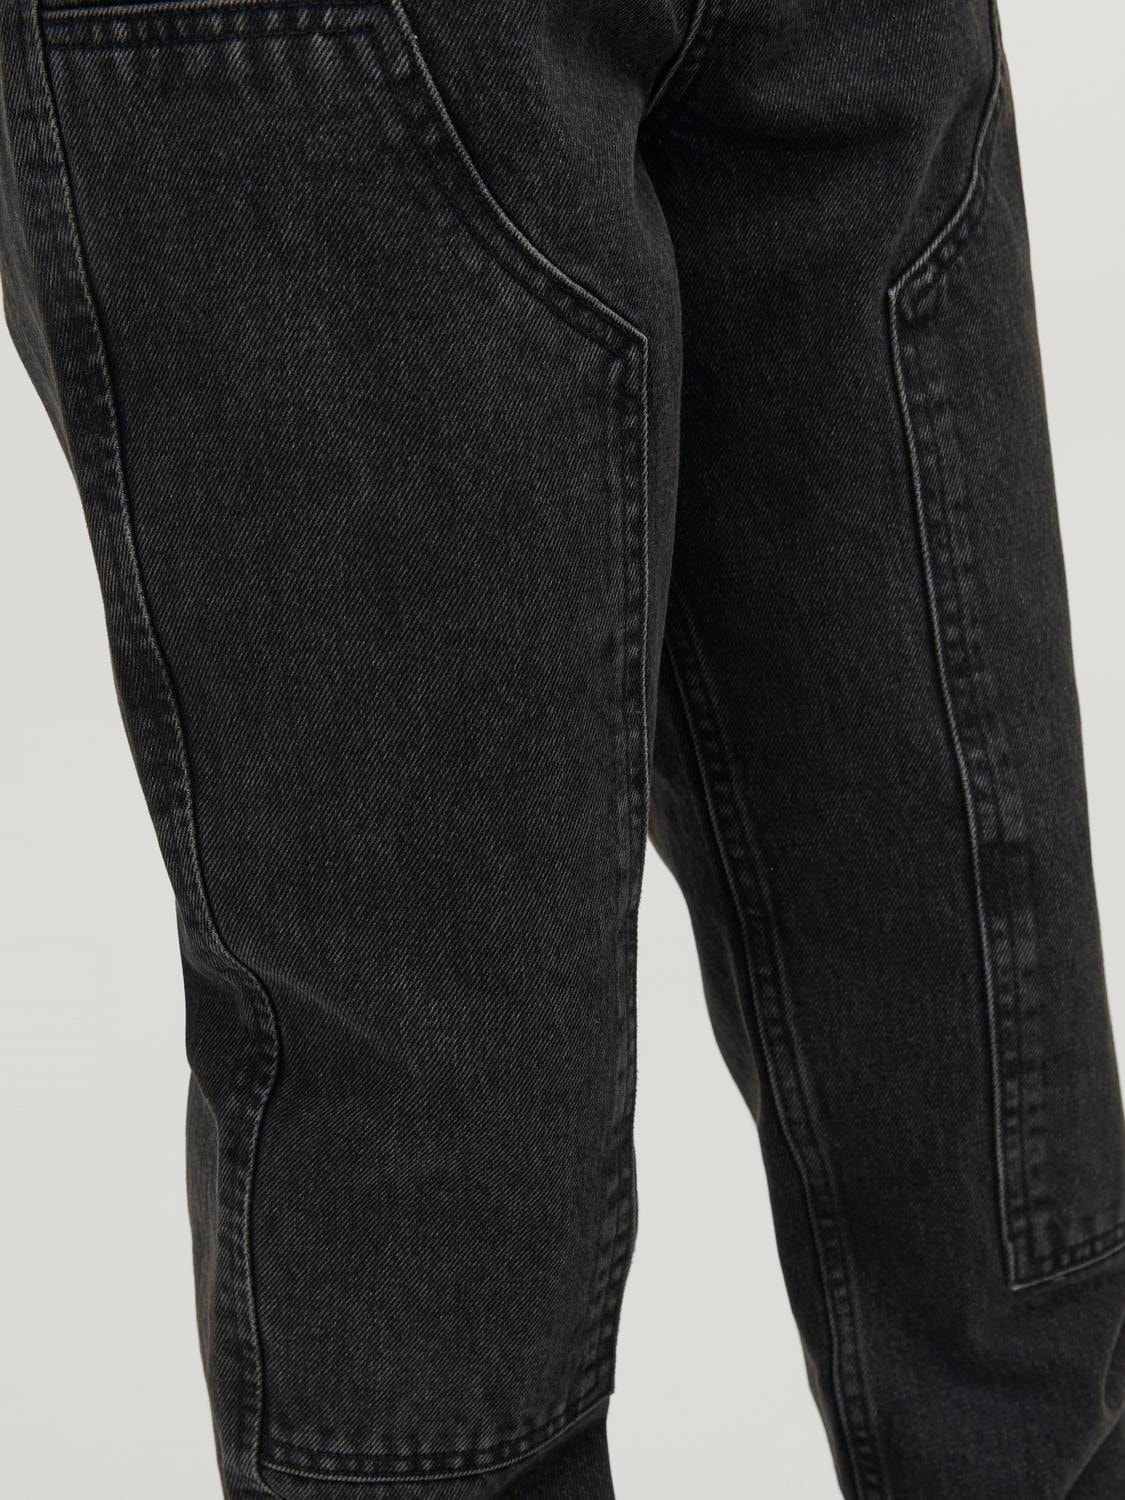 Jack & Jones JJICHRIS JJCARPENTER  MF 823 SN Relaxed Fit Jeans For boys -Black Denim - 12242847